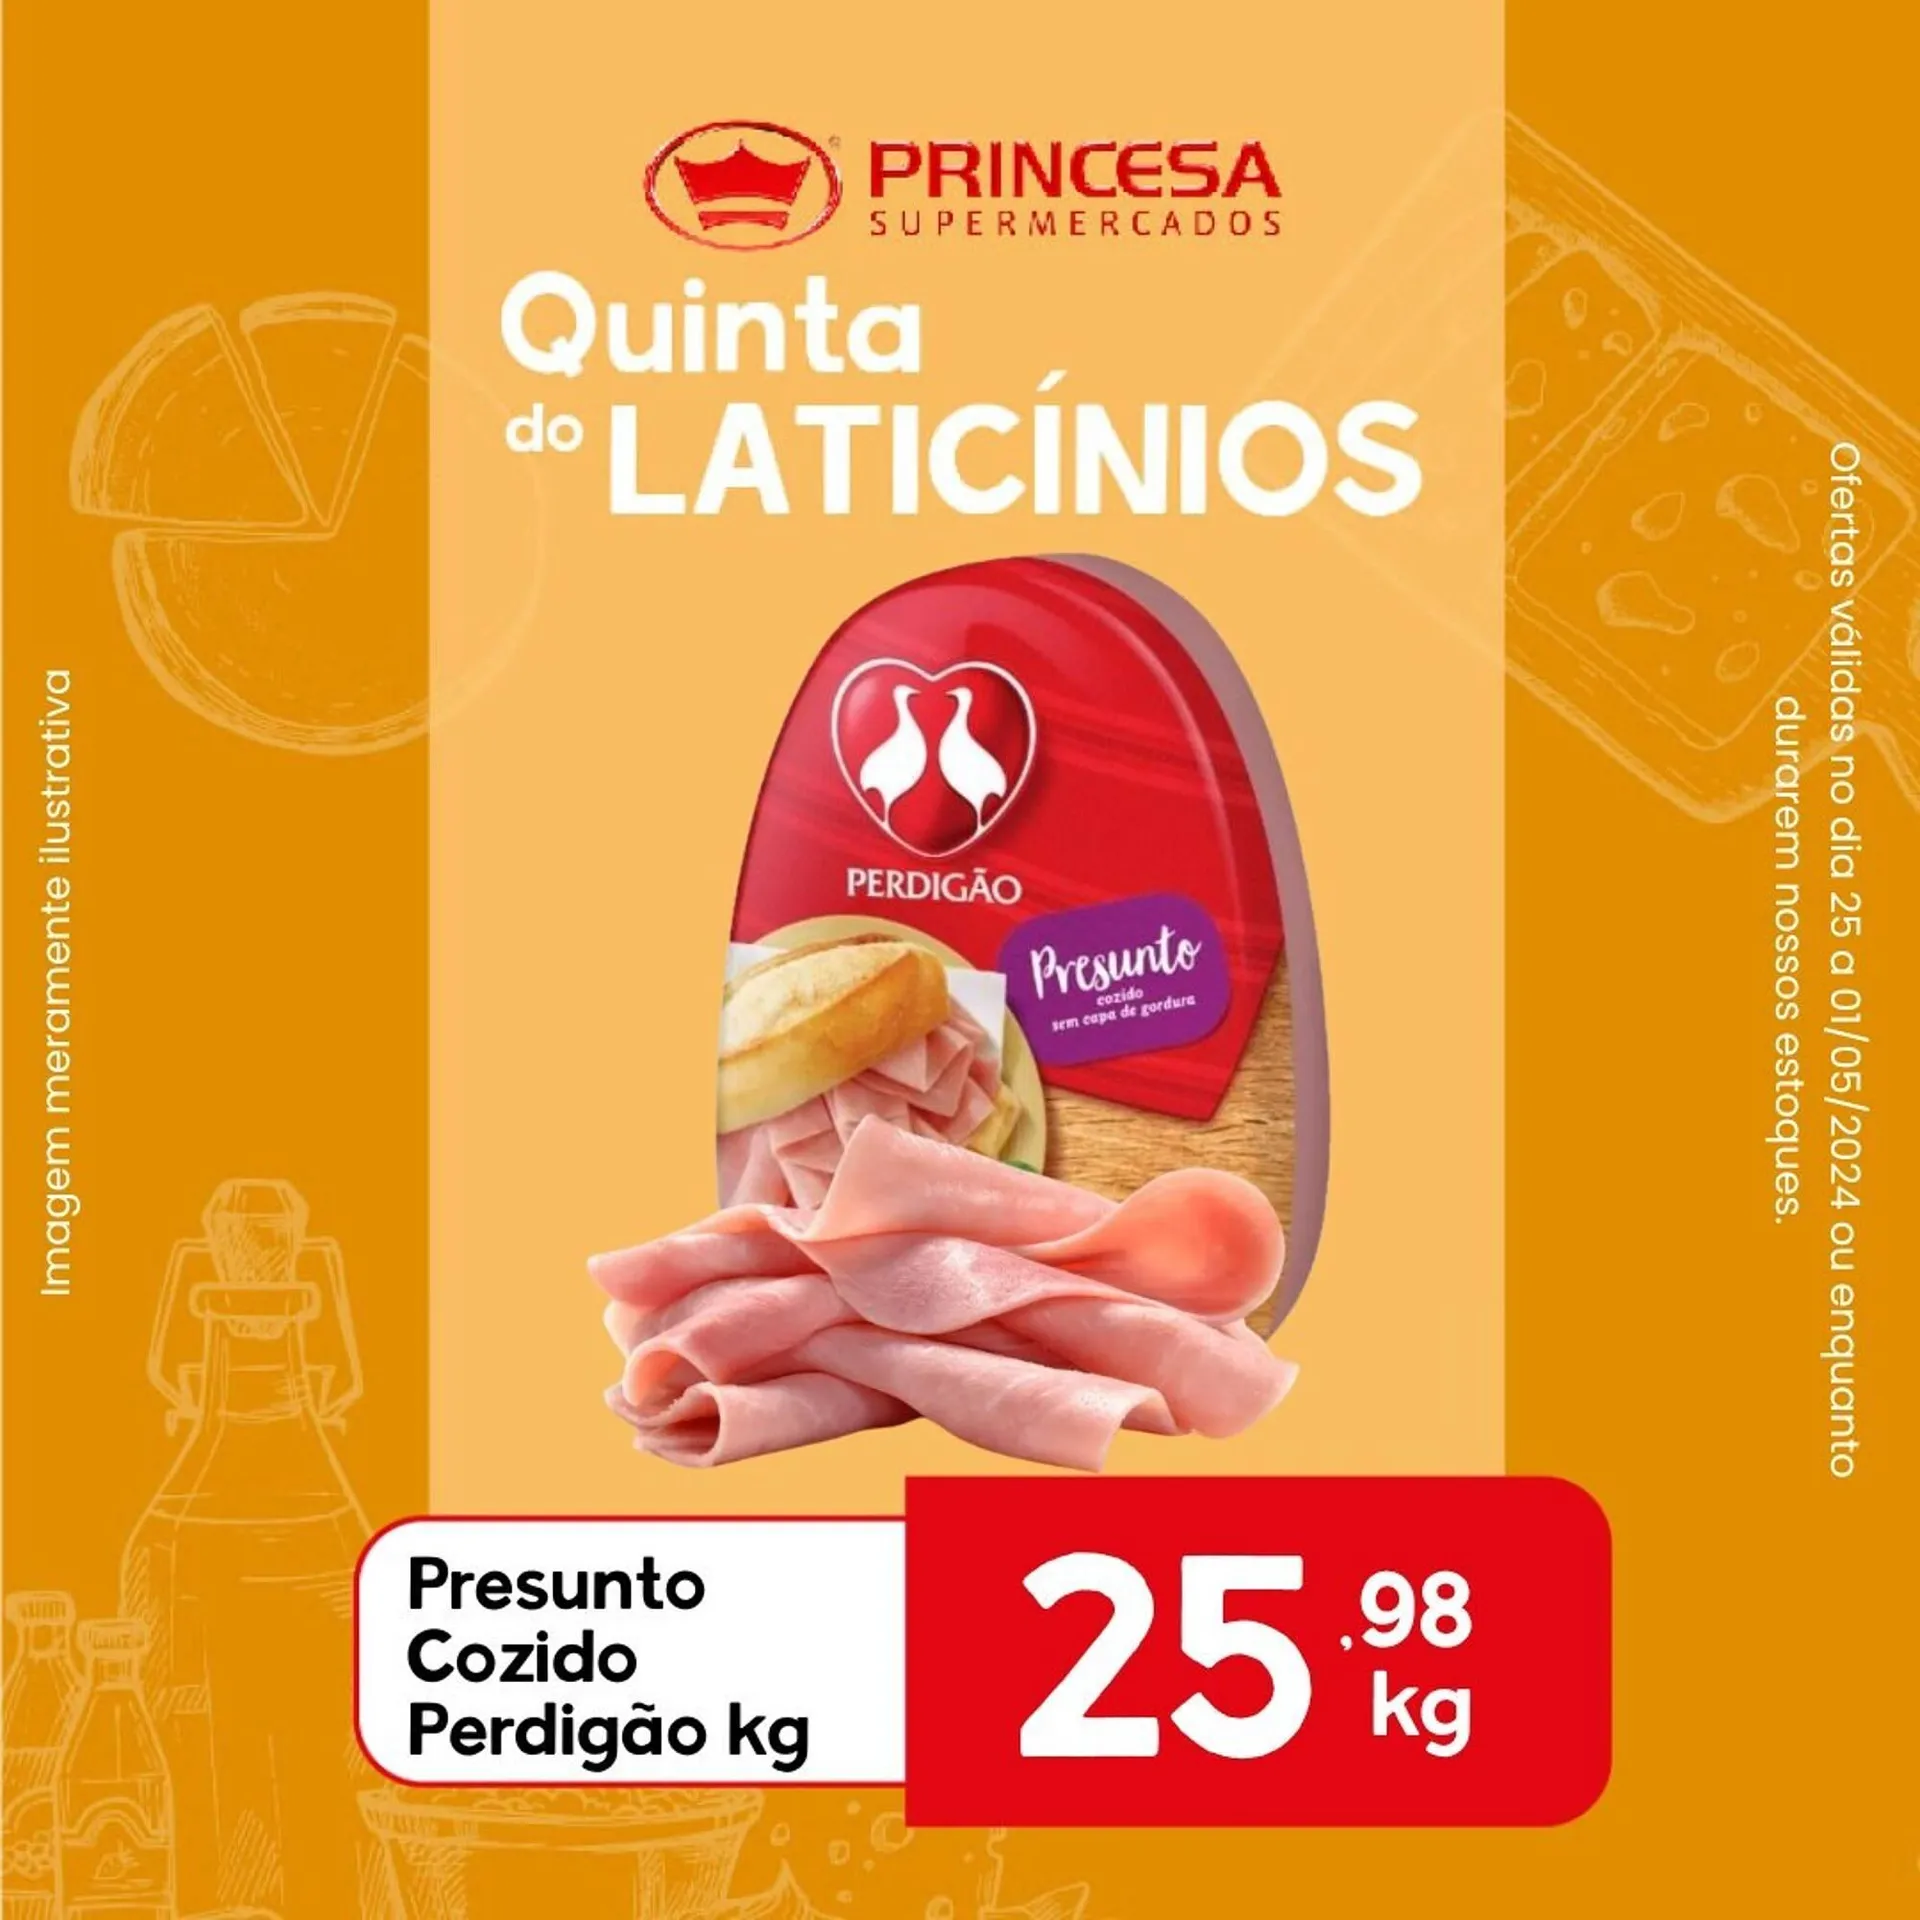 Catálogo Supermercados Princesa - 5